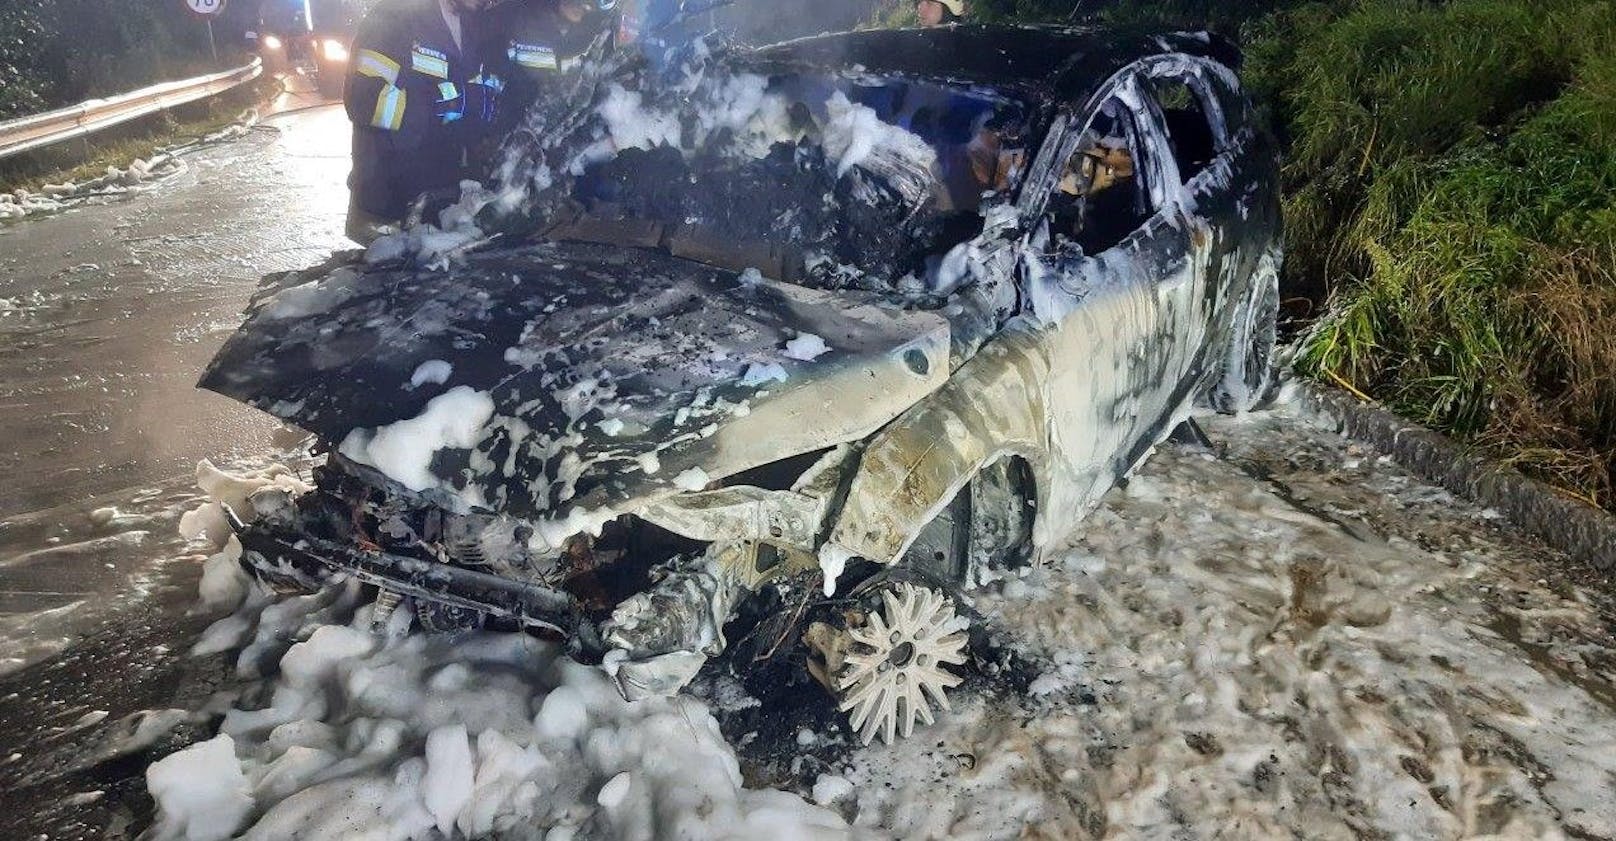 21-Jähriger von Freunden aus brennendem Auto gerettet